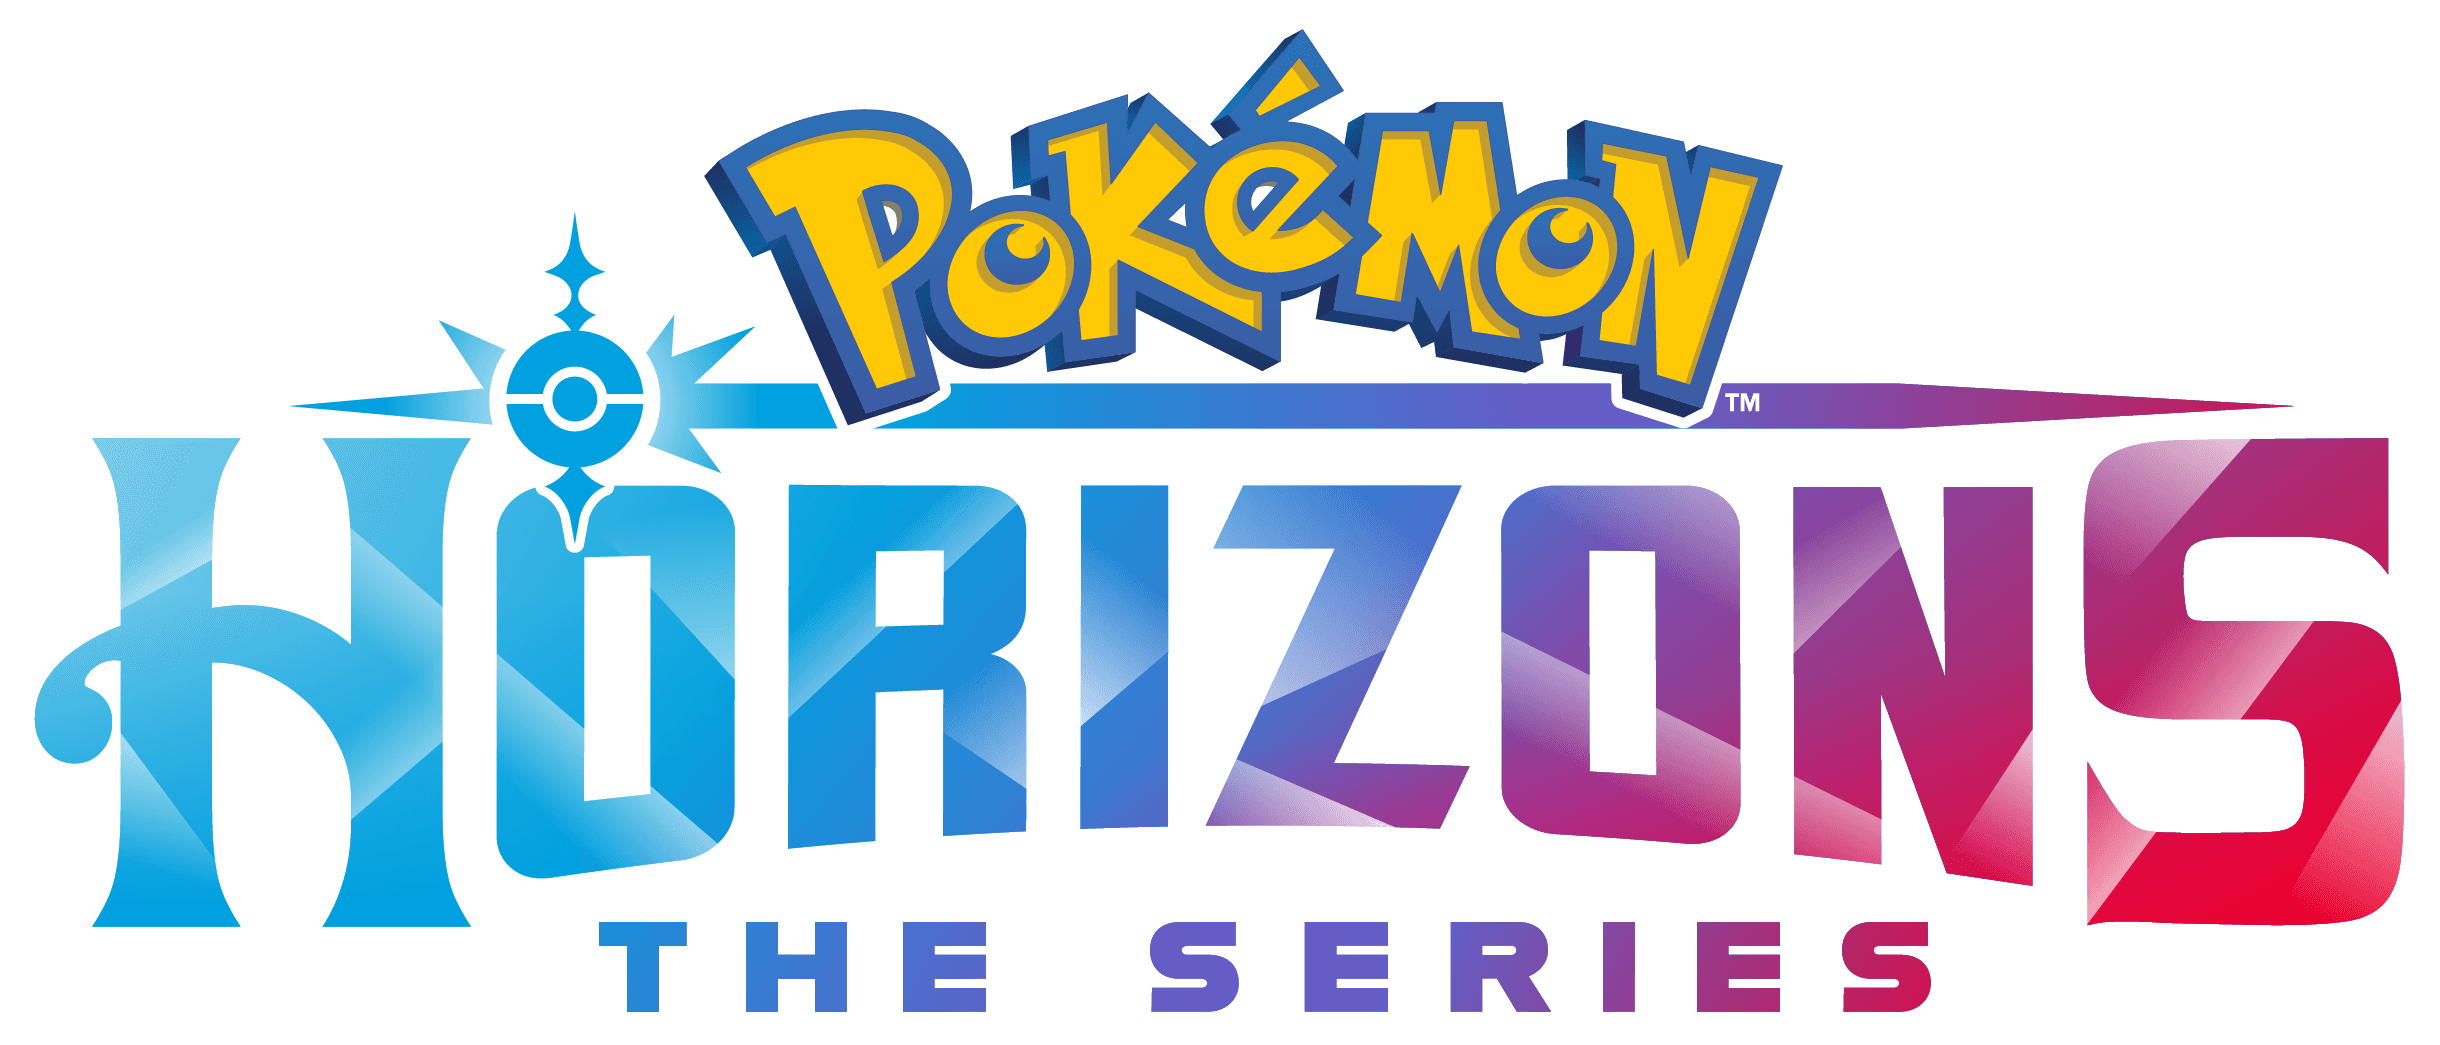 Pokémon Horizons: The Series logo